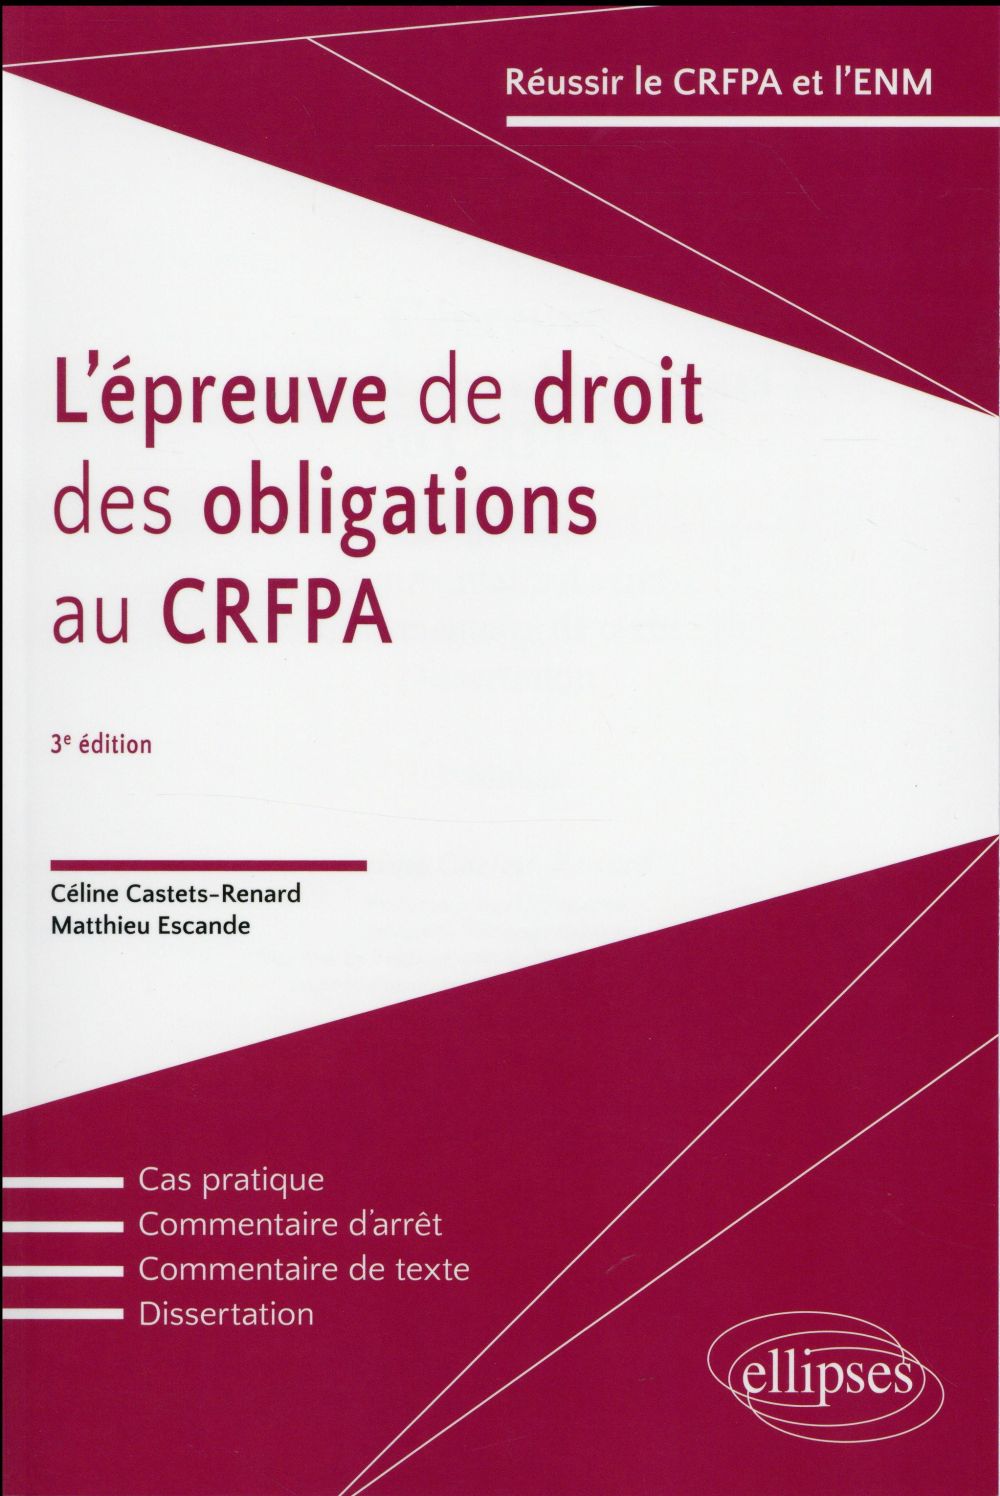 L'EPREUVES DE DROIT DES OBLIGATIONS AU CRFPA - 3E EDITION